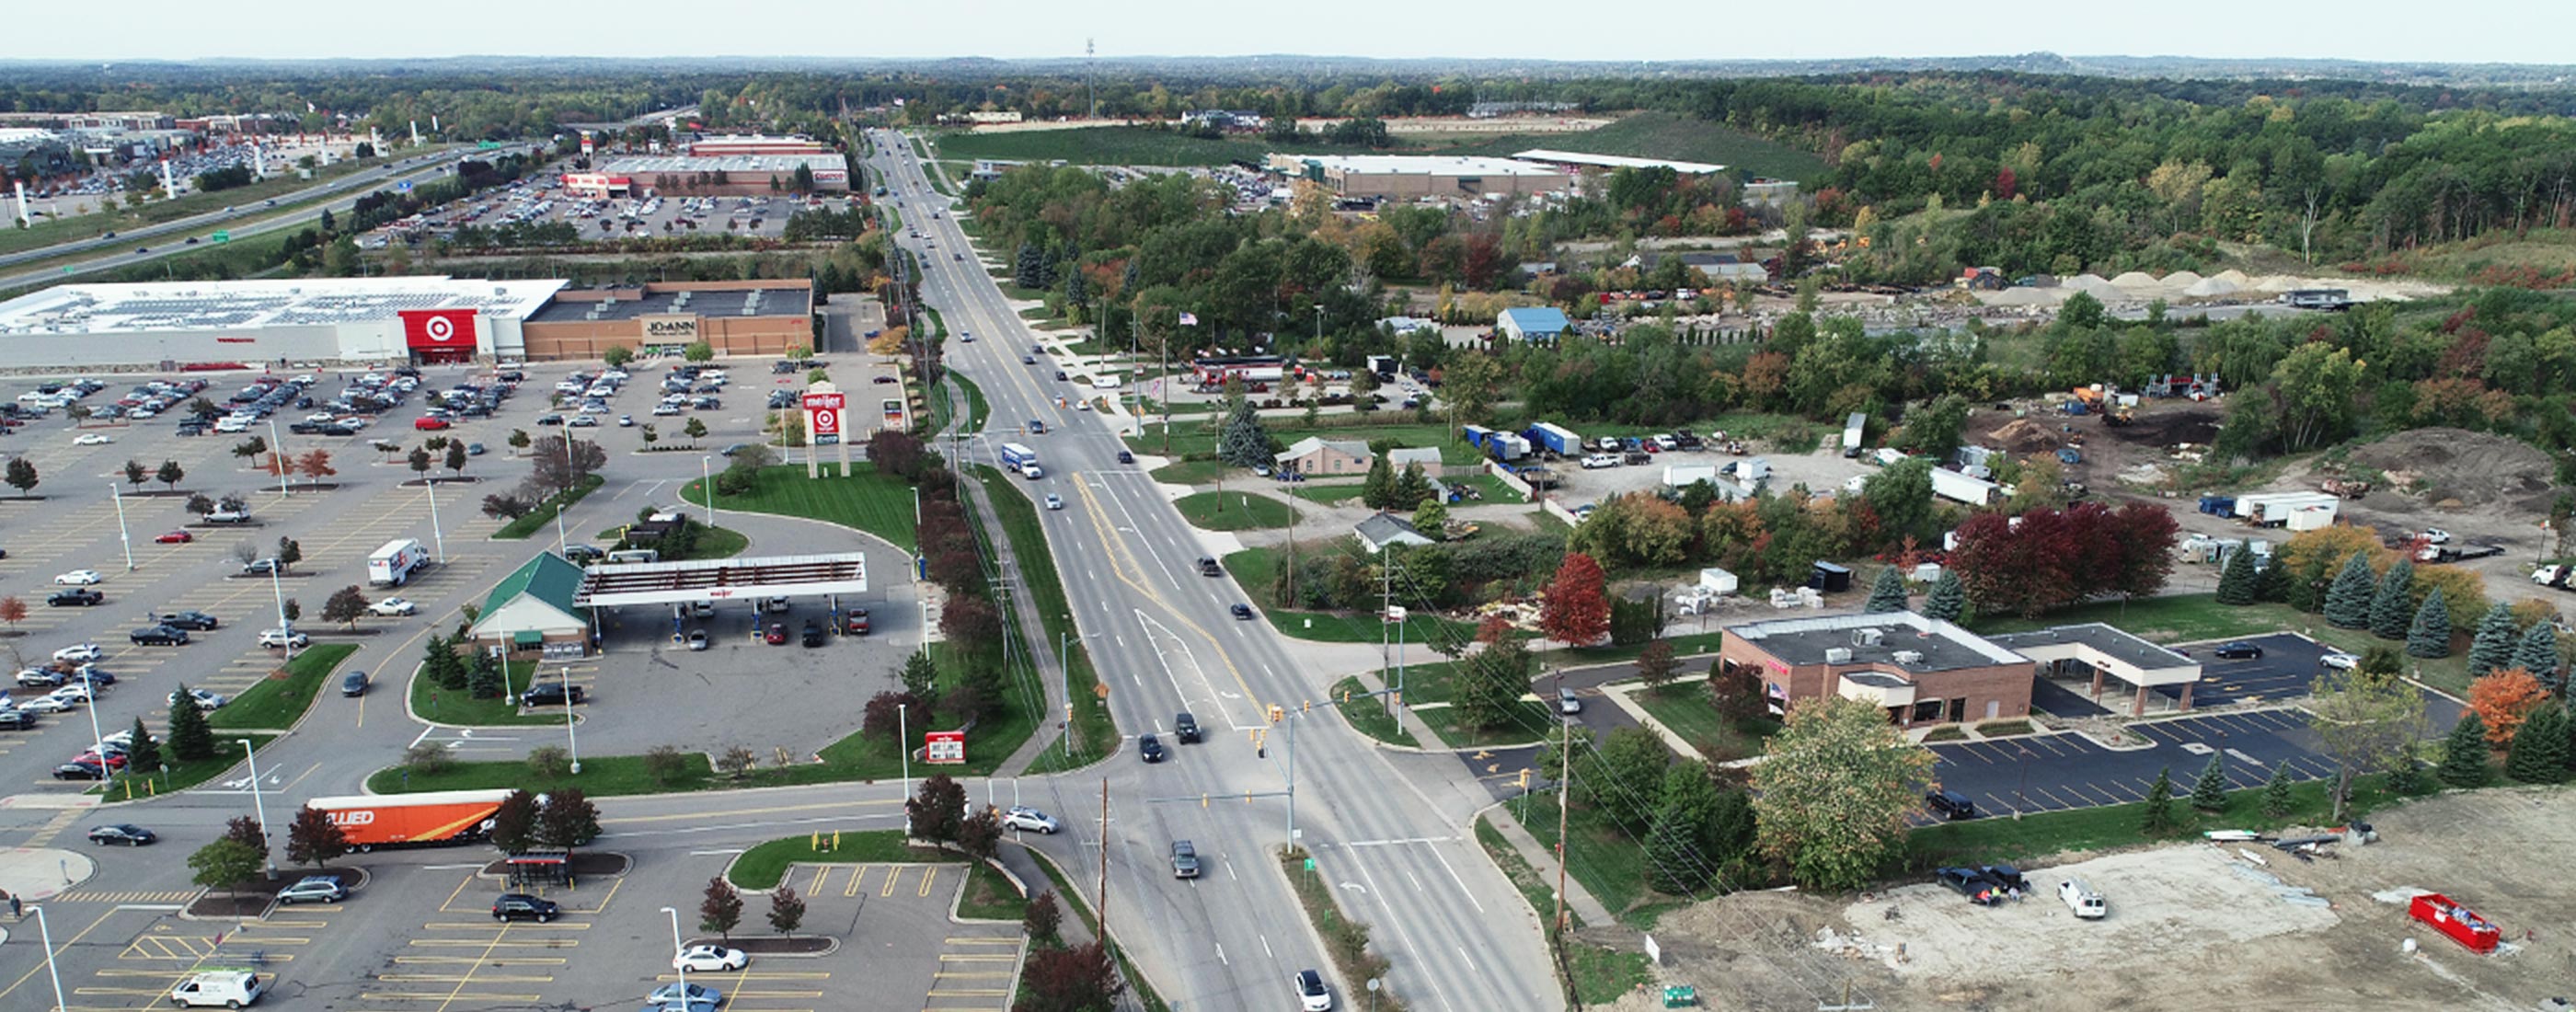 Aerial view of Brown Road looking west